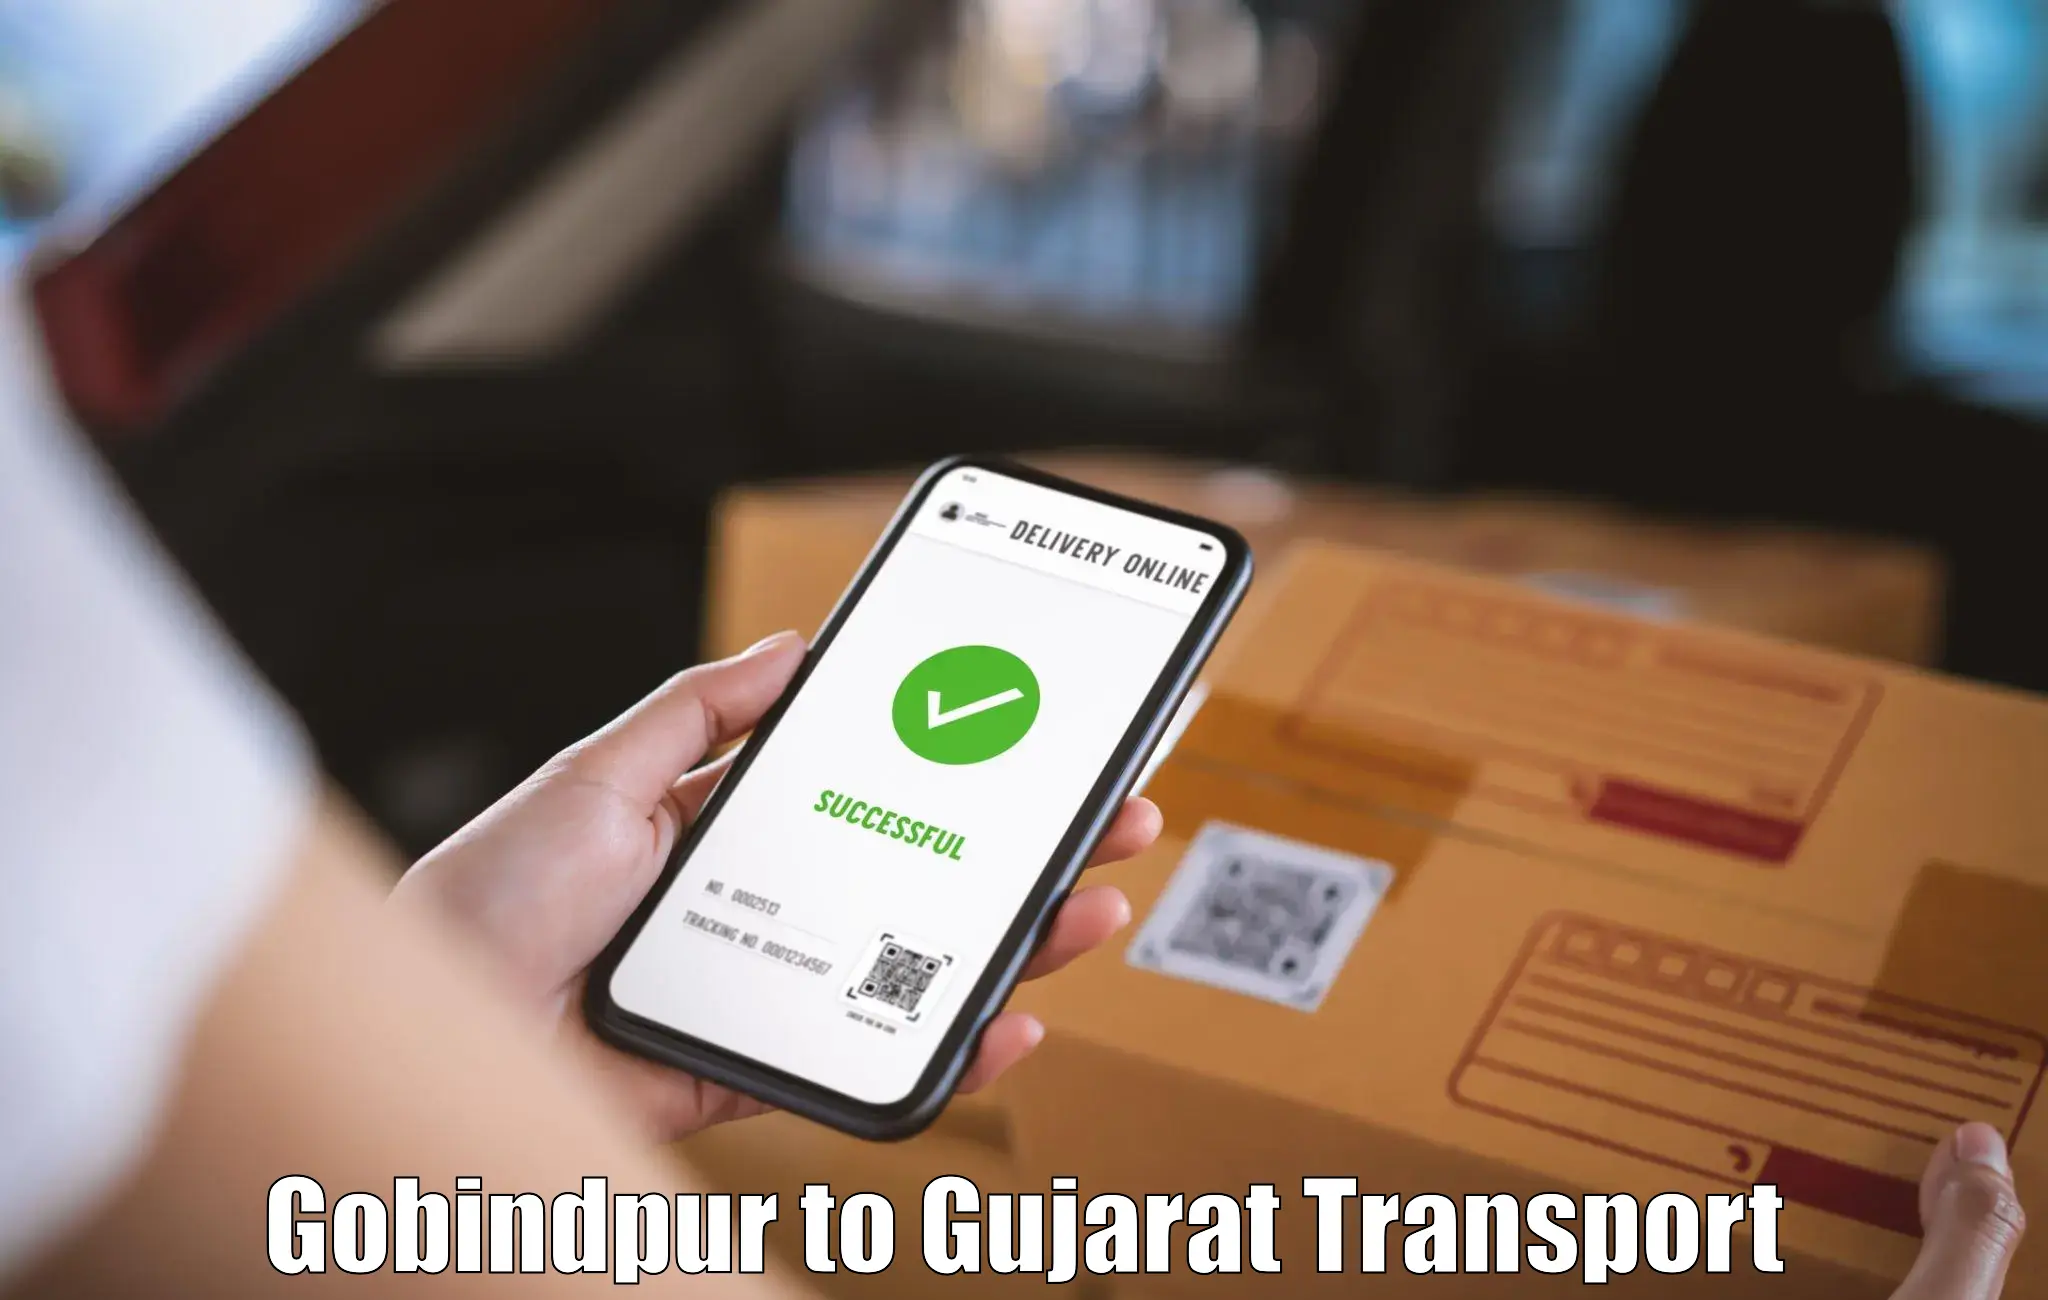 Parcel transport services Gobindpur to Godhra